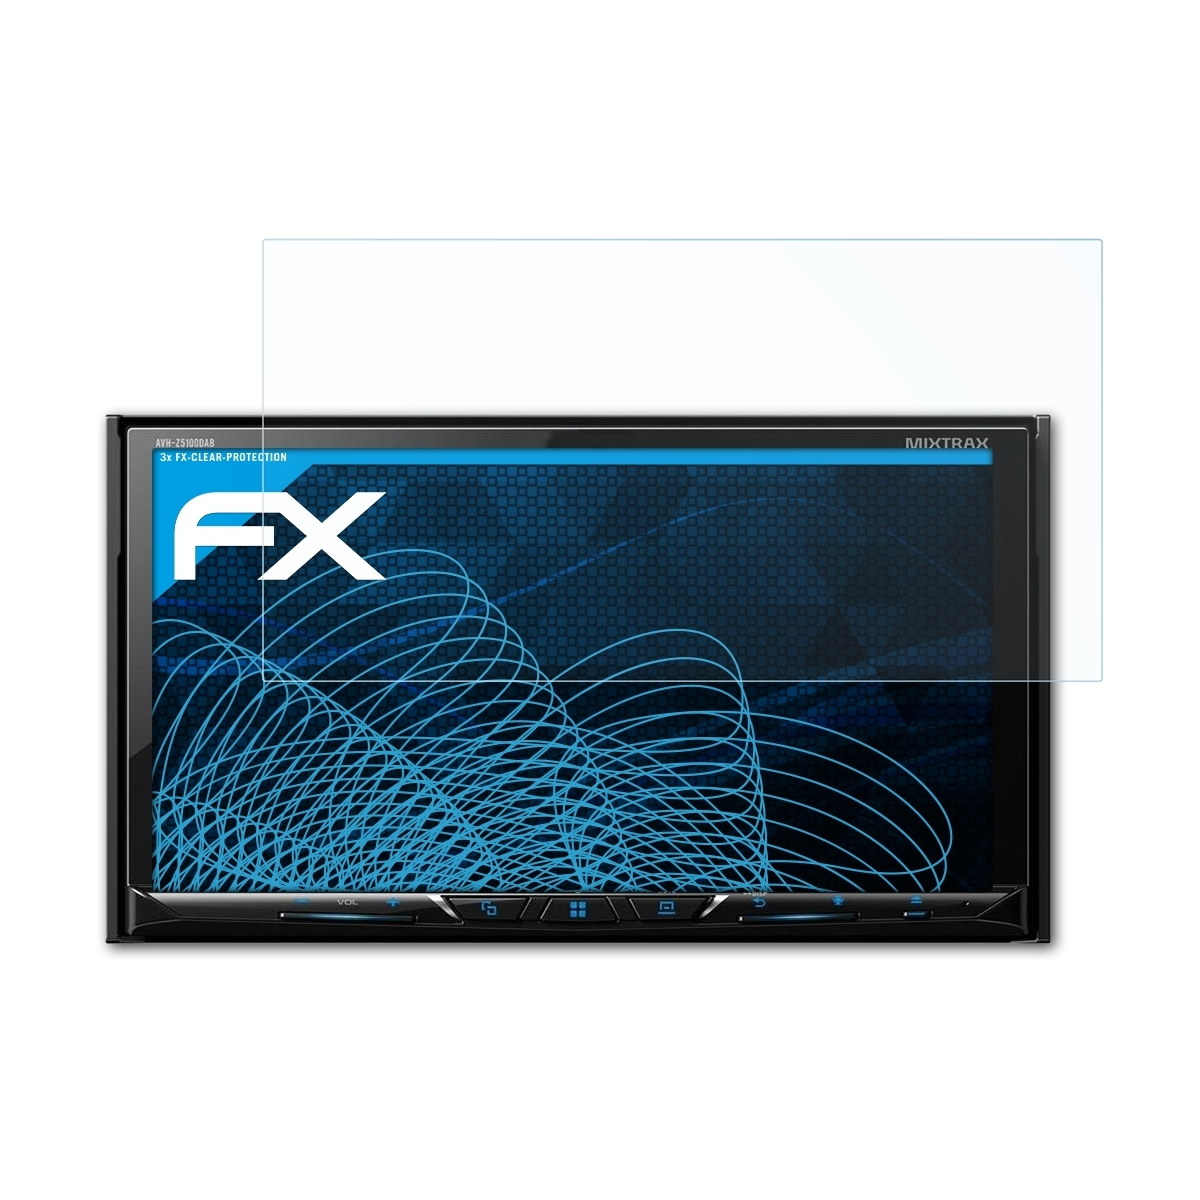 ATFOLIX 3x FX-Clear Displayschutz(für AVH-Z5100DAB) Pioneer